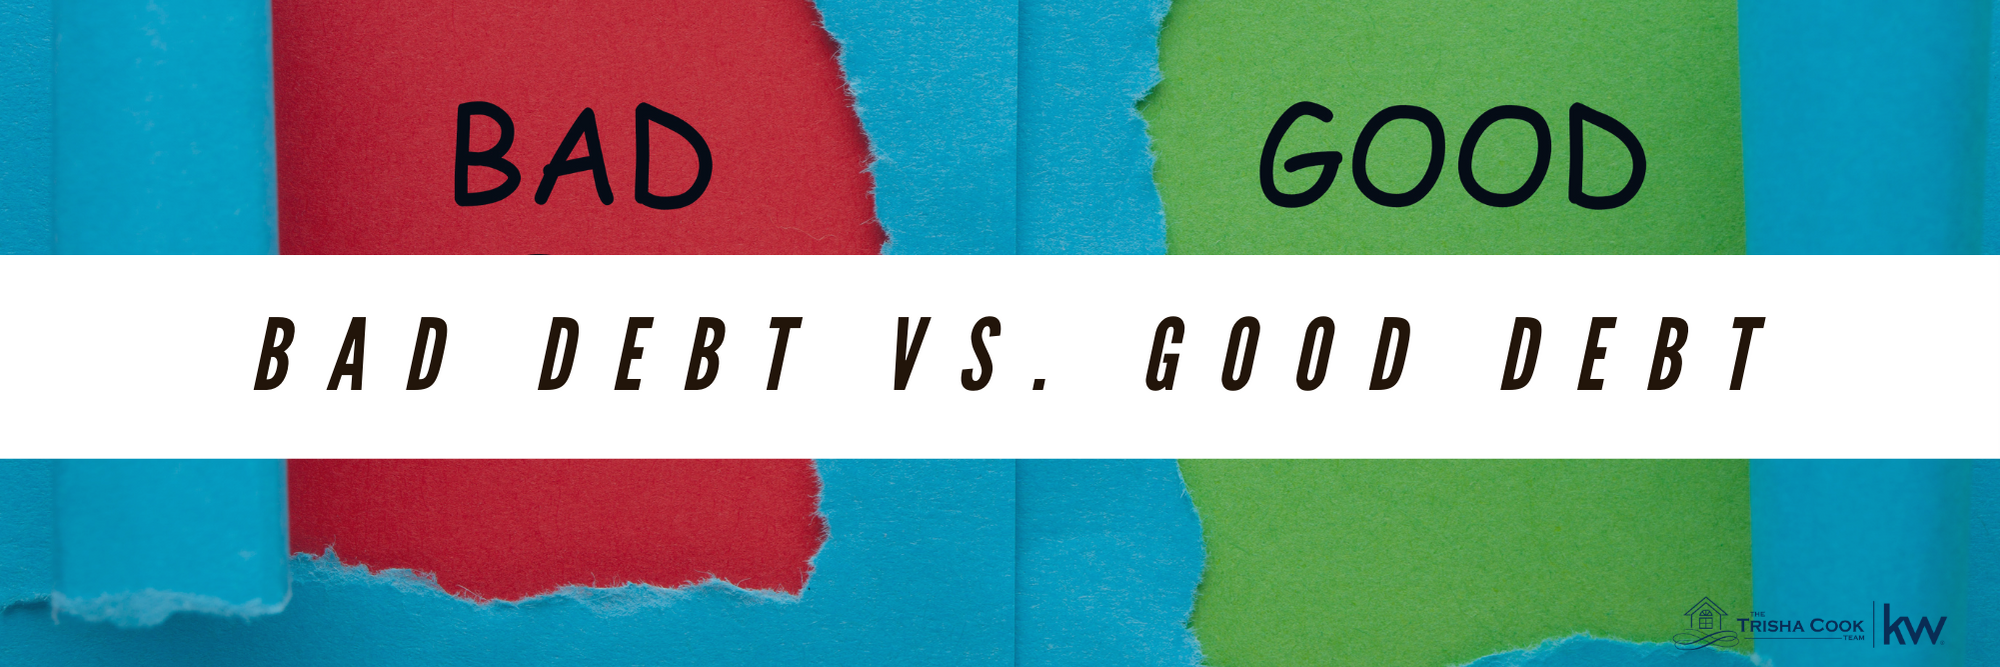 bad debt VS. Good debt.png